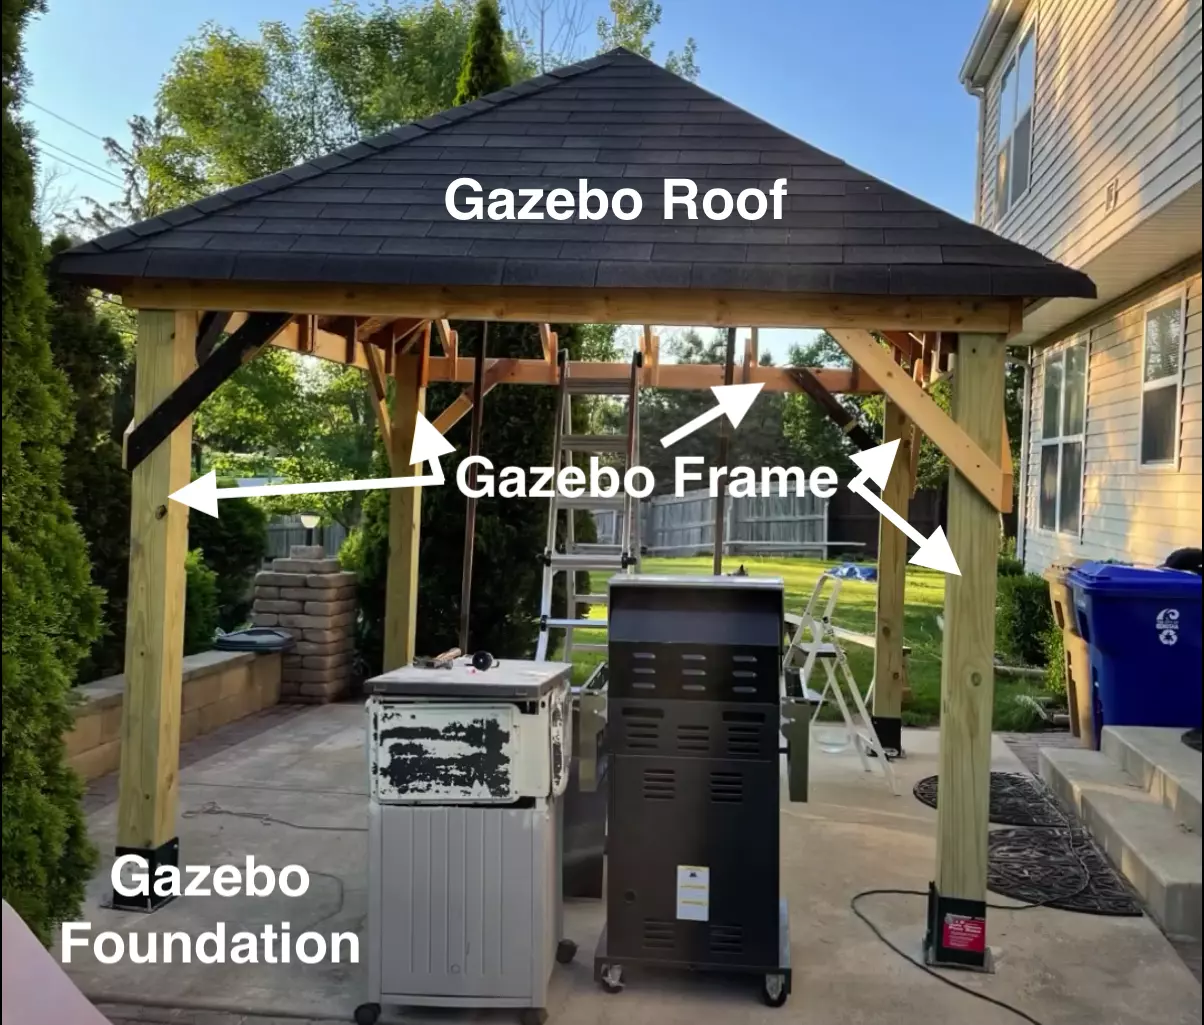 basic elements of a gazebo, basic gazebo parts, showing roof, frame and foundation